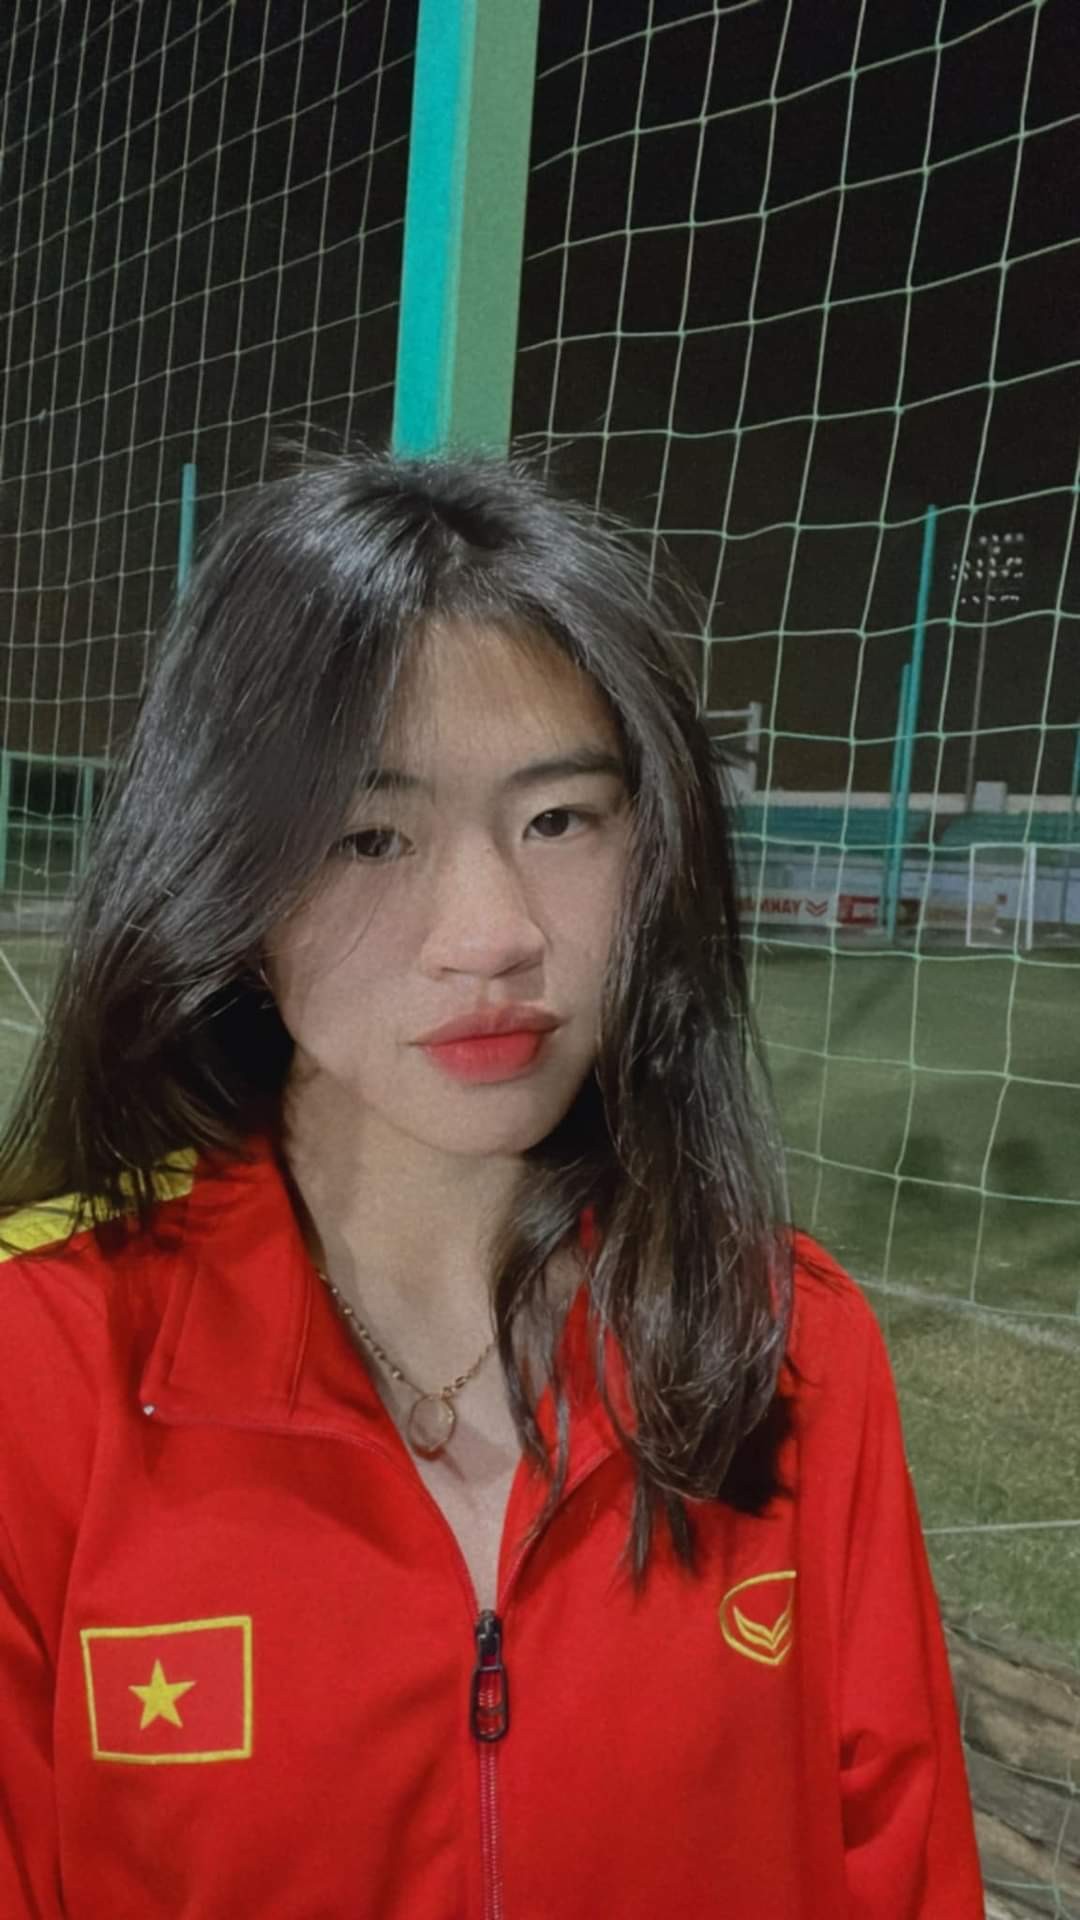 Đội tuyển nữ Việt Nam bước vào trận đấu với quyết tâm cao. Và thực tế, các cô gái Vàng đã hoàn thành xuất sắc mục tiêu với siêu phẩm của Thanh Nhã. (Ảnh: Facebook nhân vật)